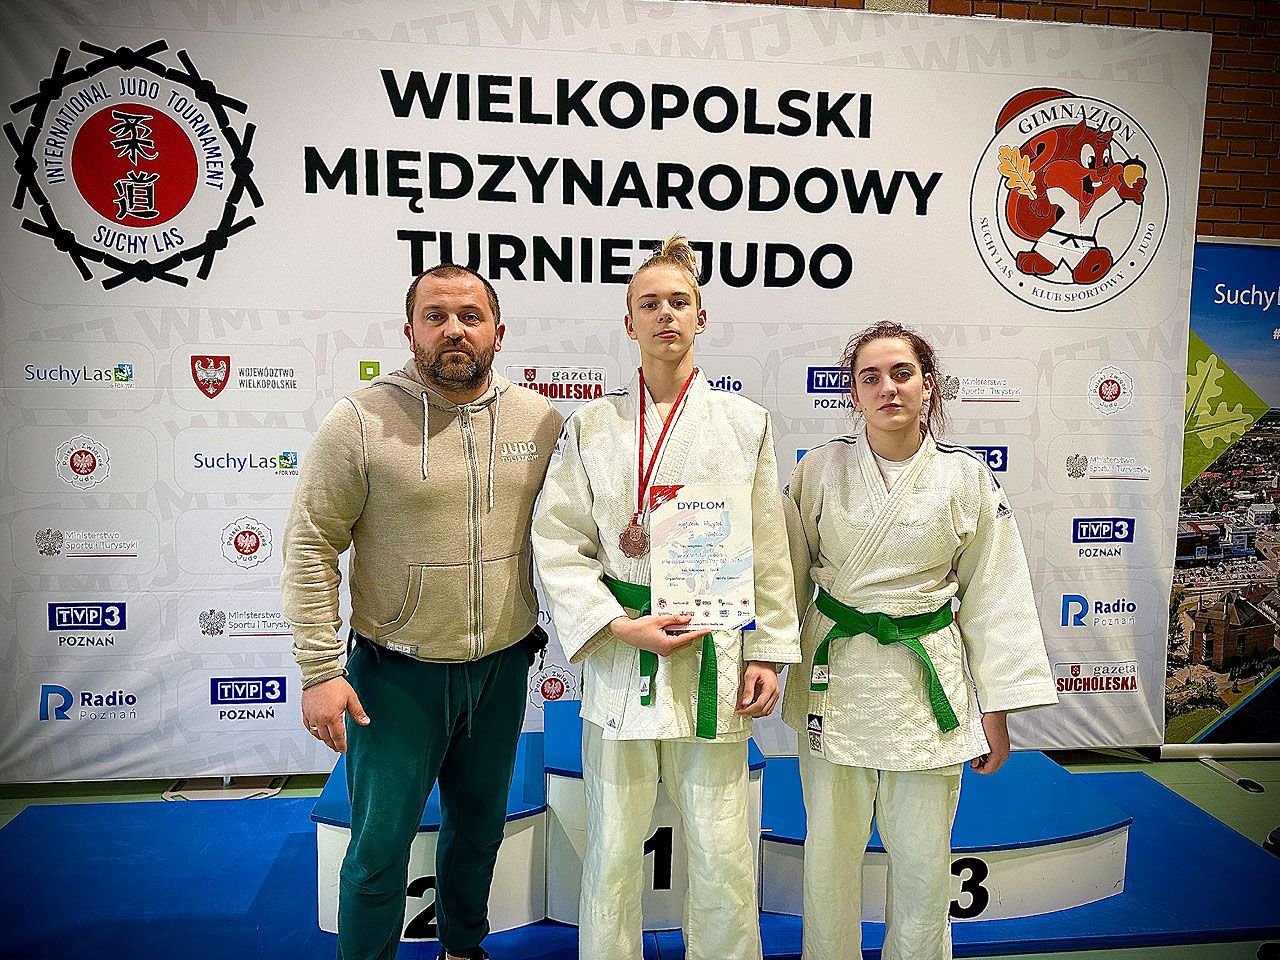 XX Wielkopolski Międzynarodowy Turniej Judo z udziałem zawodników z Tuliszkowa